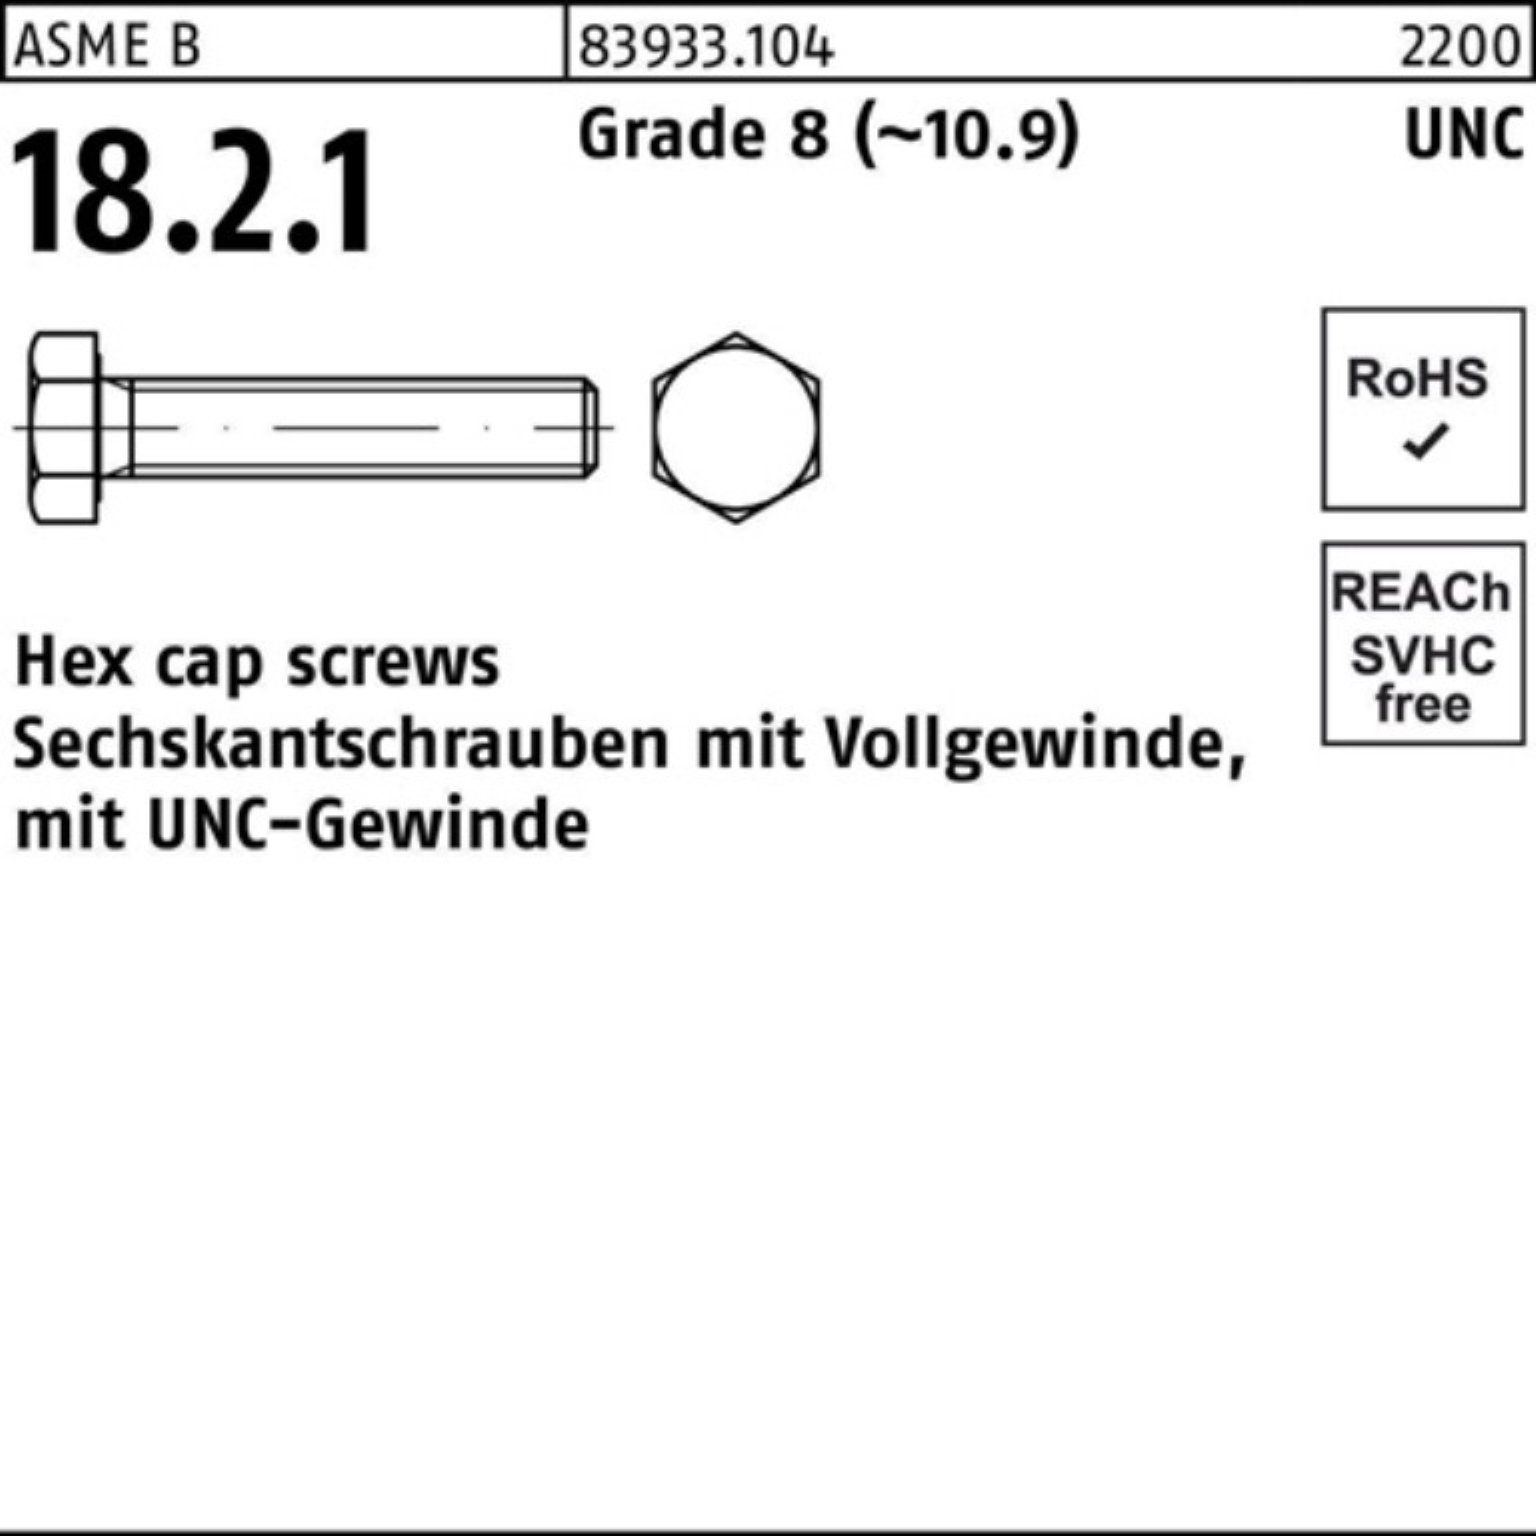 Reyher Sechskantschraube 100er Pack Sechskantschraube R 83933 UNC-Gewinde VG 3/8x 7/8 Grade 8